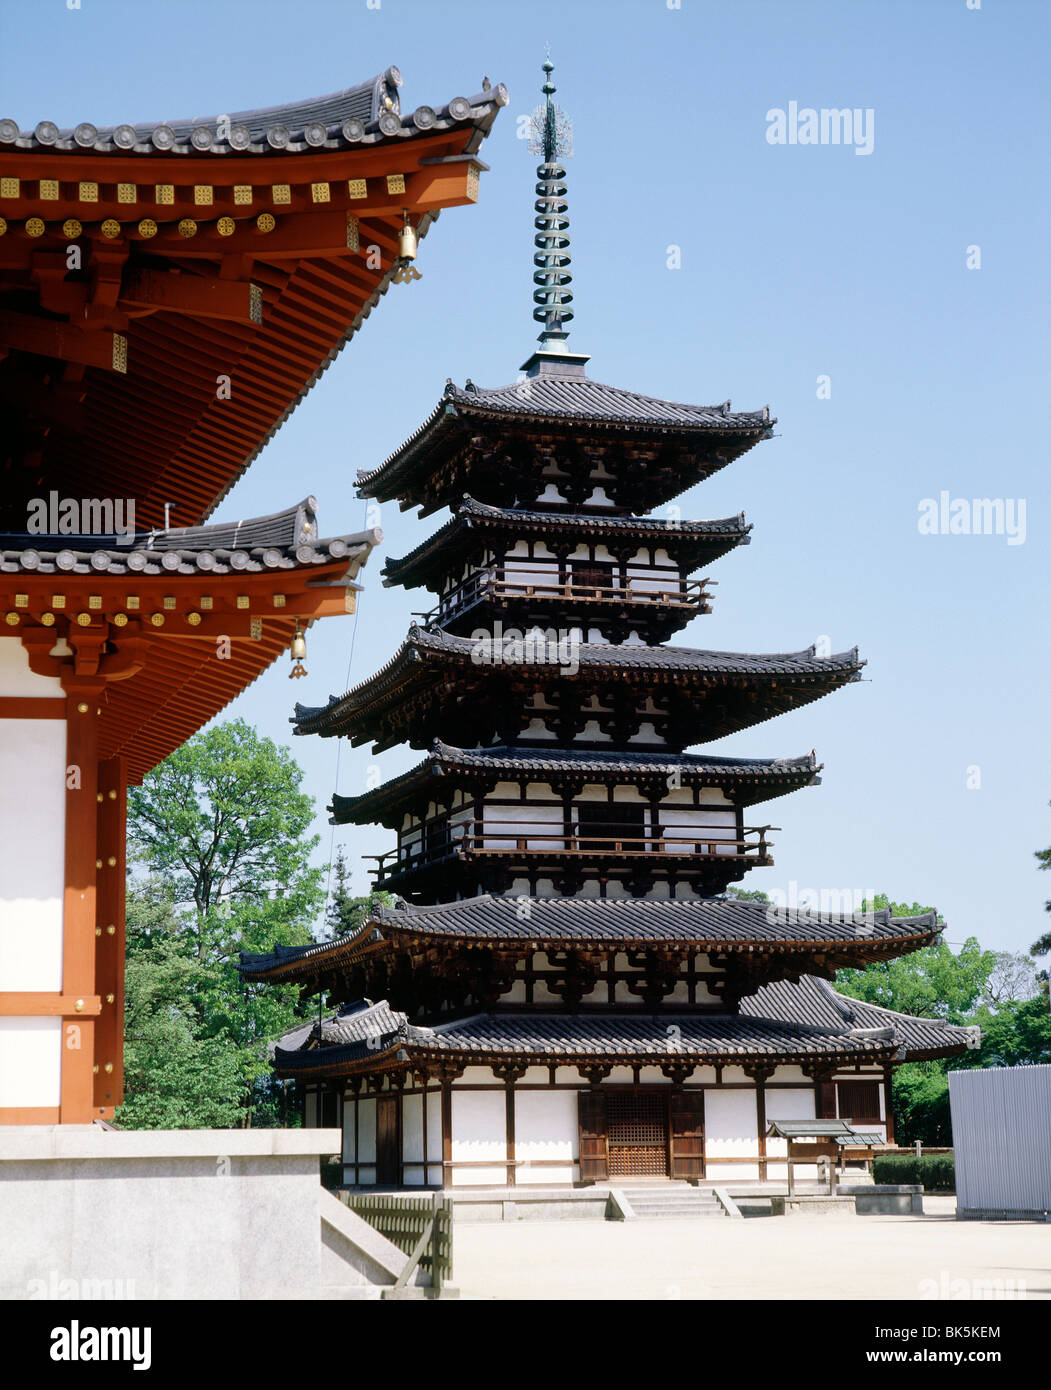 Yakushiji templo, construido por el emperador Temmu a finales del siglo VII, Nara, Sitio del Patrimonio Mundial de la UNESCO, Japón, Asia Foto de stock